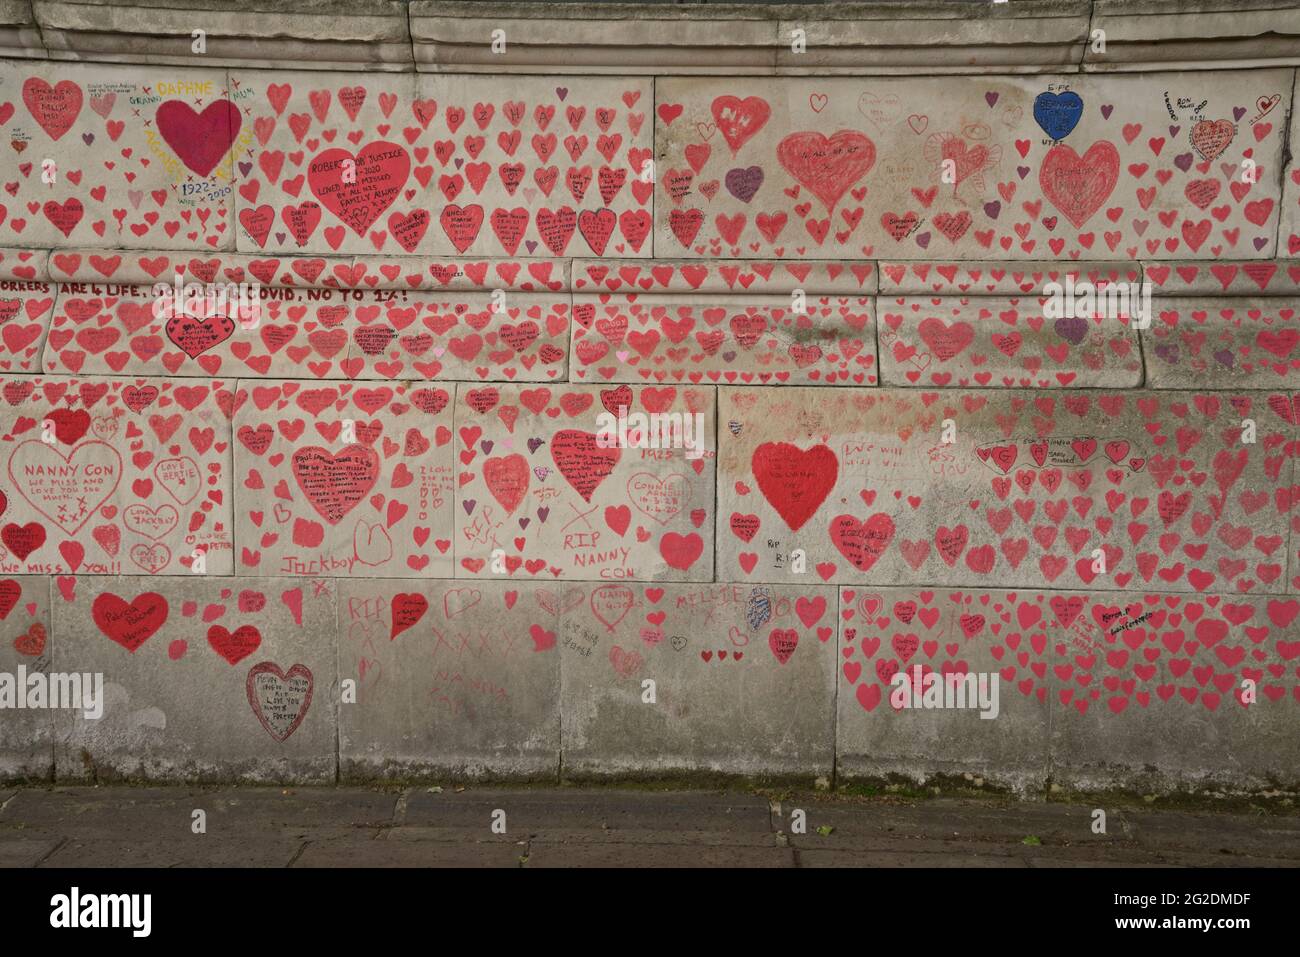 Die National Covid Memorial Wall, ein öffentliches Wandgemälde, das von Freiwilligen gemalt wurde, um den Opfern der COVID-19-Pandemie im Vereinigten Königreich zu gedenken. Es liegt am Südufer der Themse in London, gegenüber dem Palace of Westminster, London, England, Großbritannien. Stockfoto